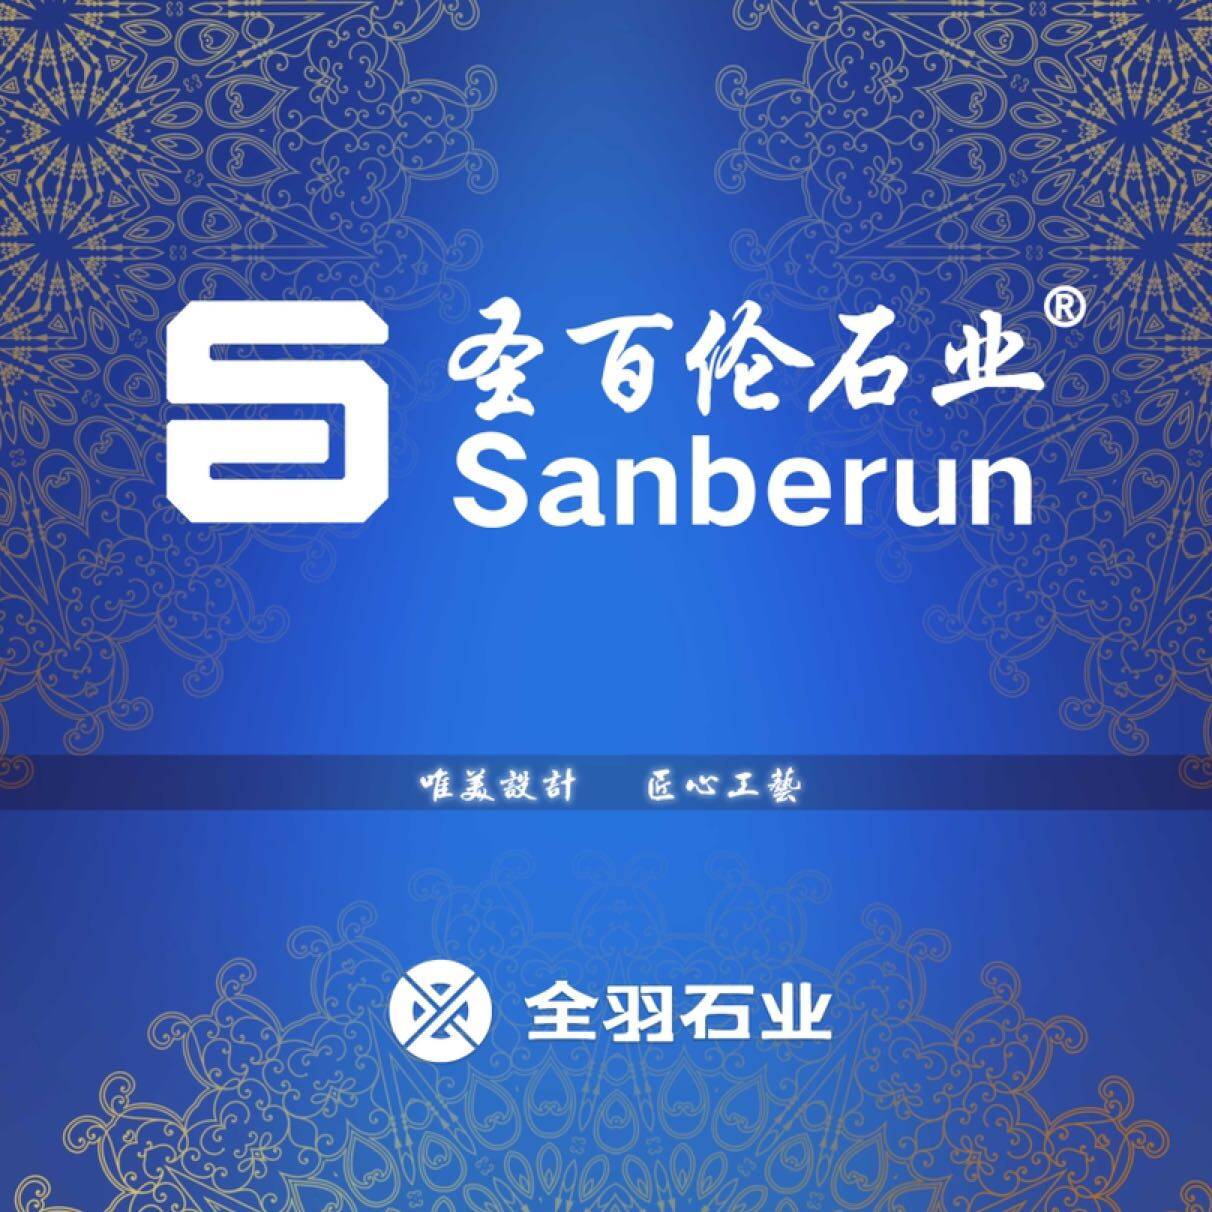 福建省泉州市圣百伦石业有限公司logo